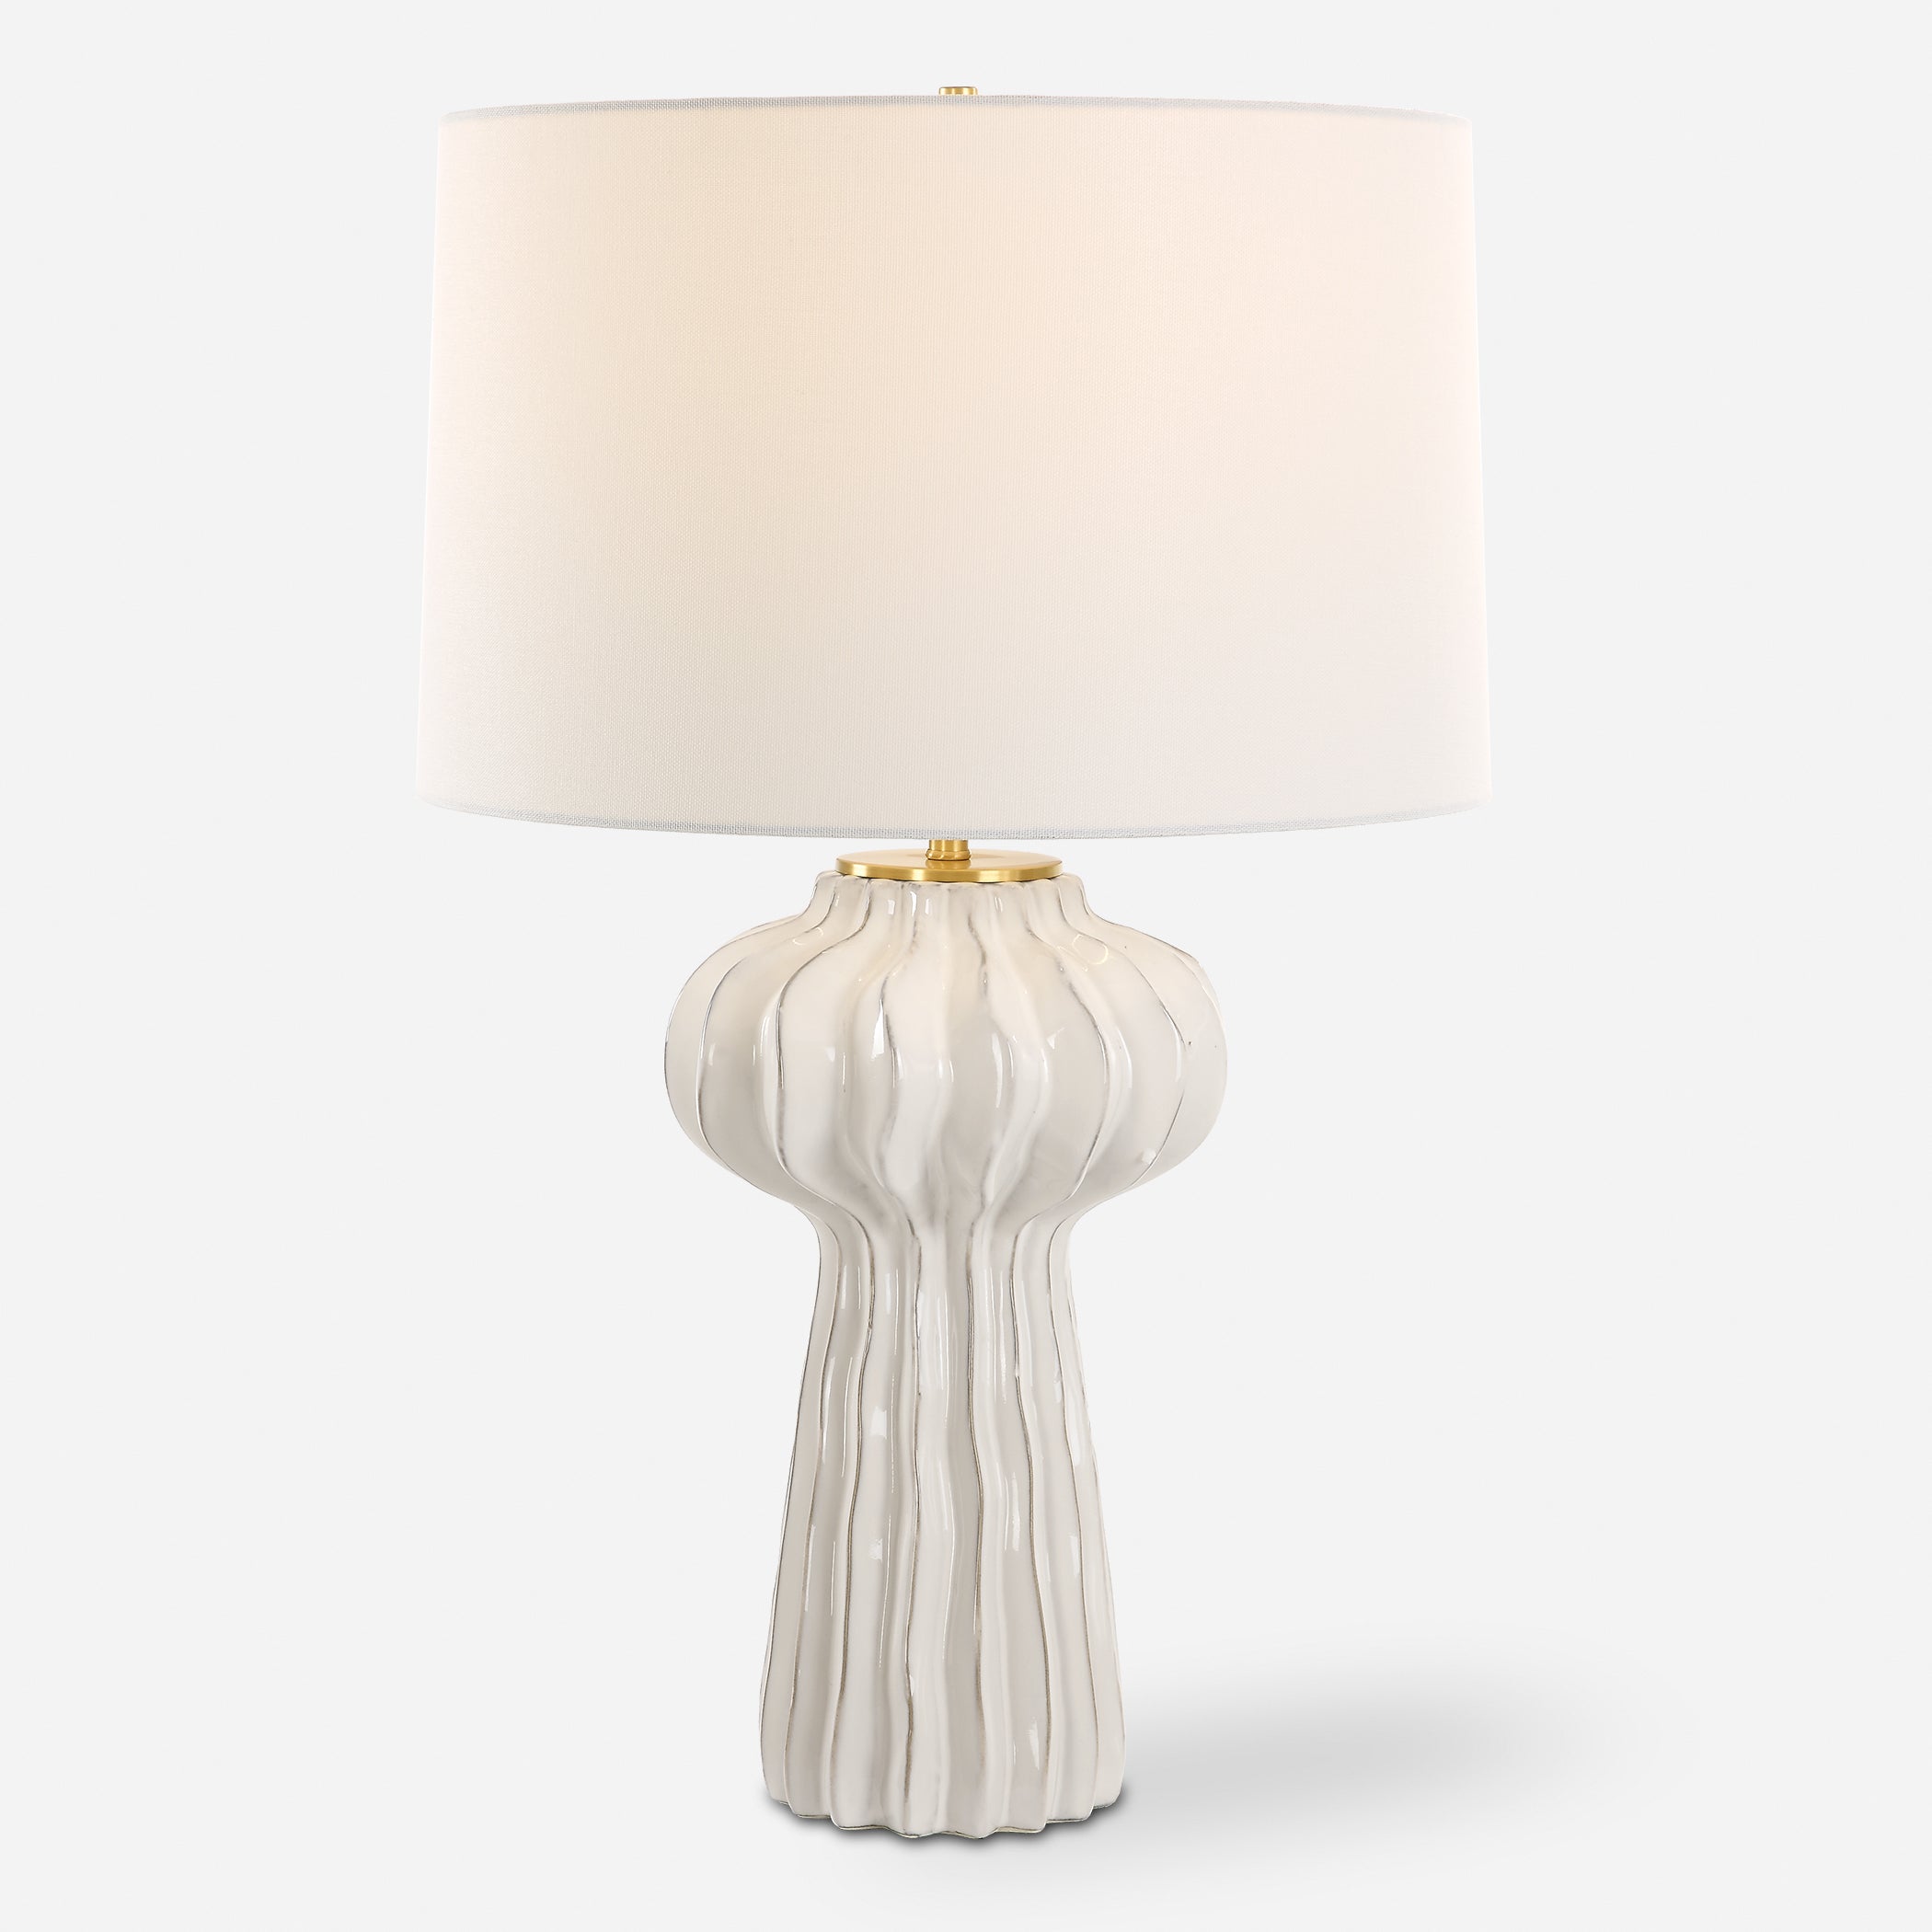 Uttermost Wrenley White Table Lamp